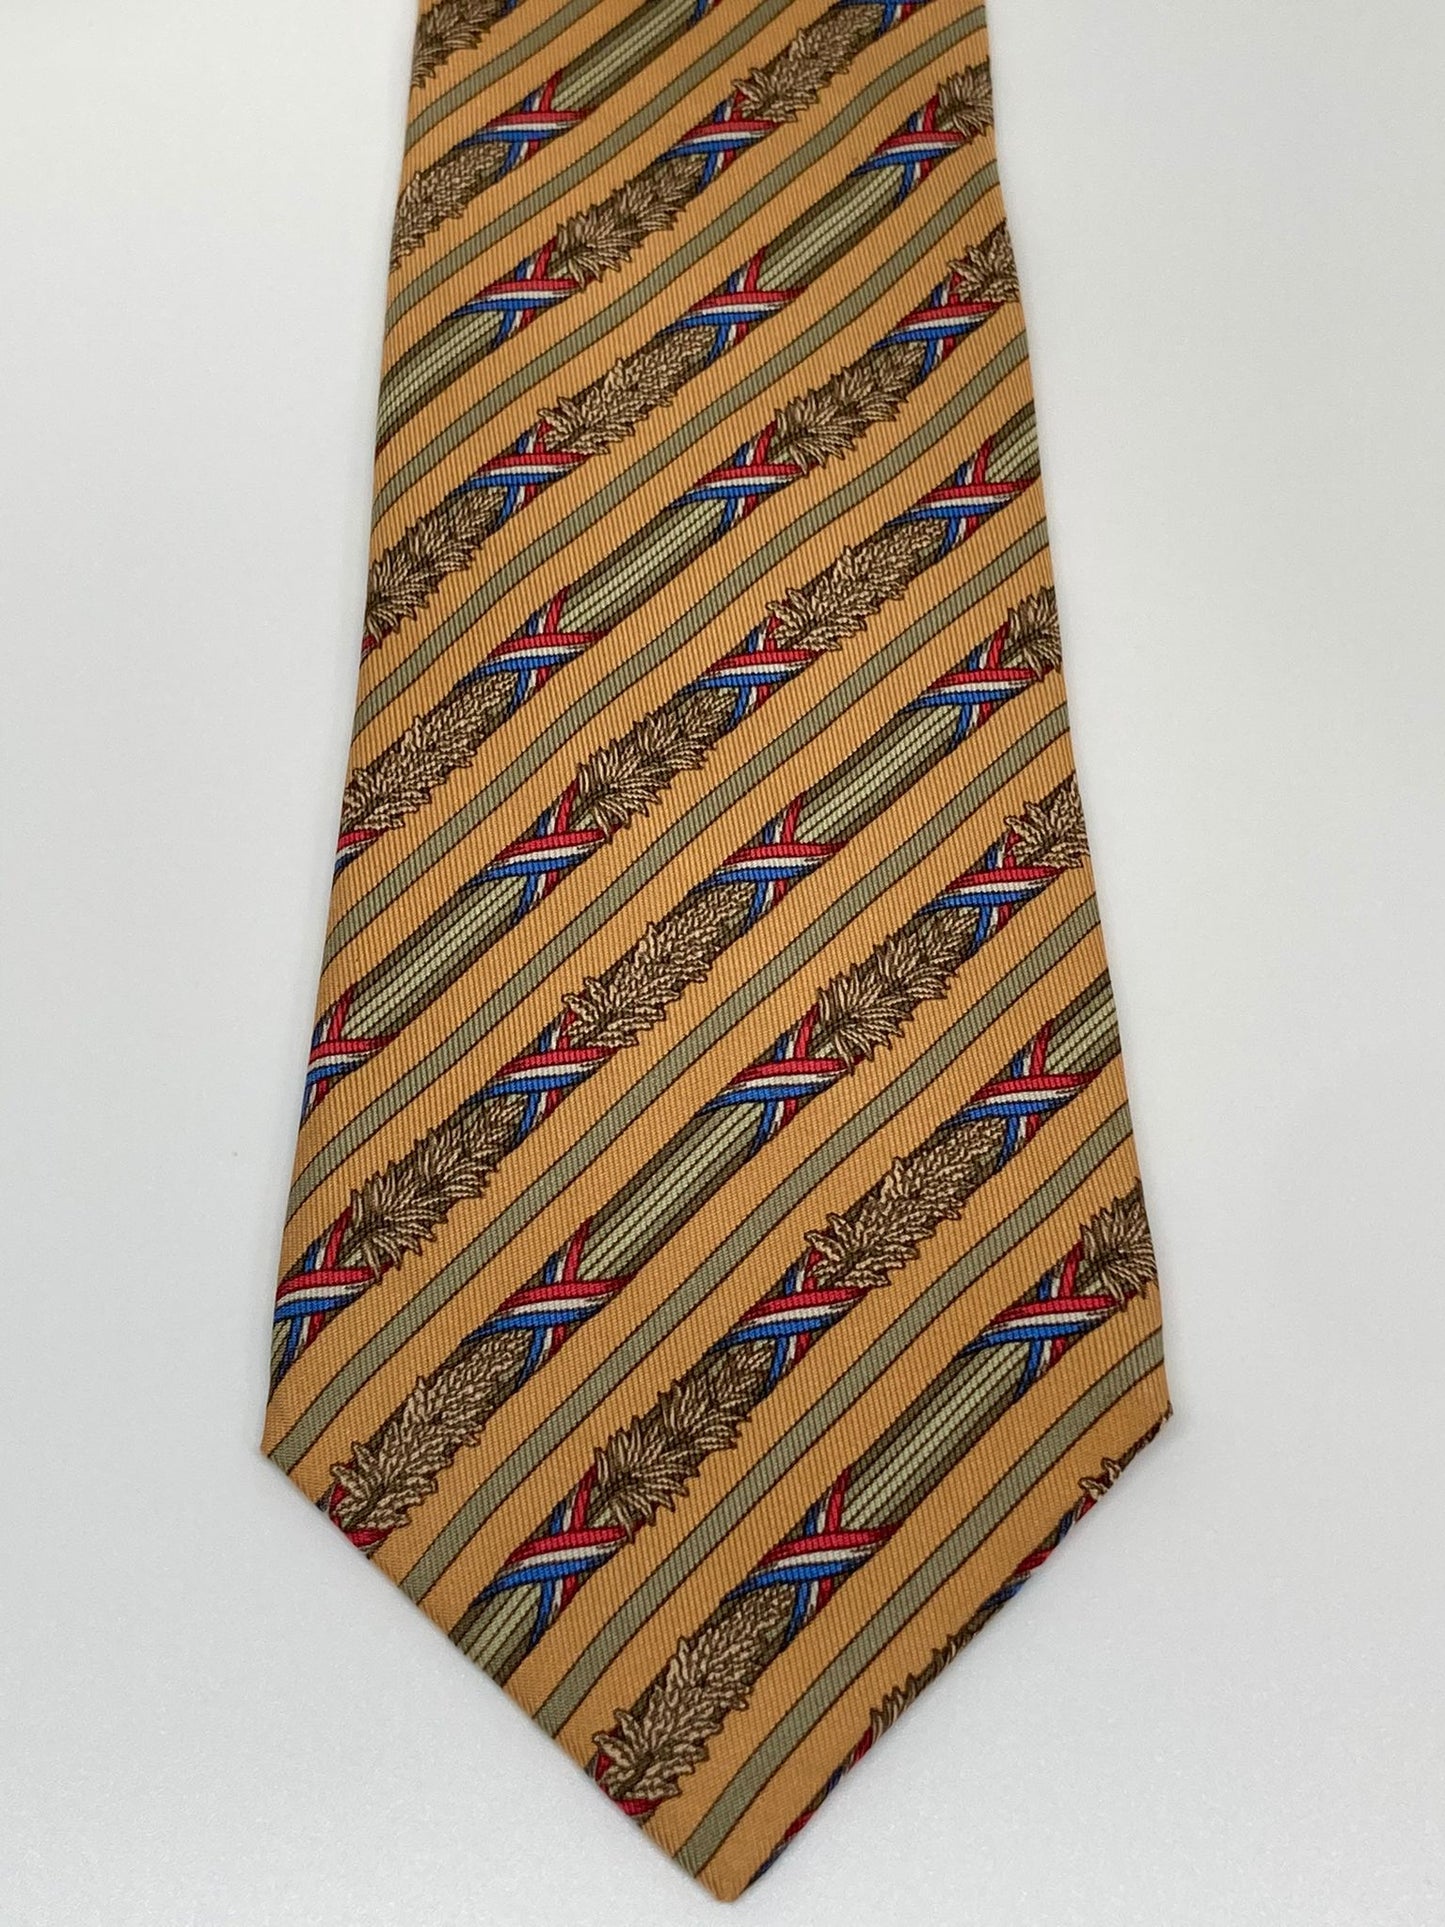 Cravatta Hermès a strisce disegnate c.7171FA